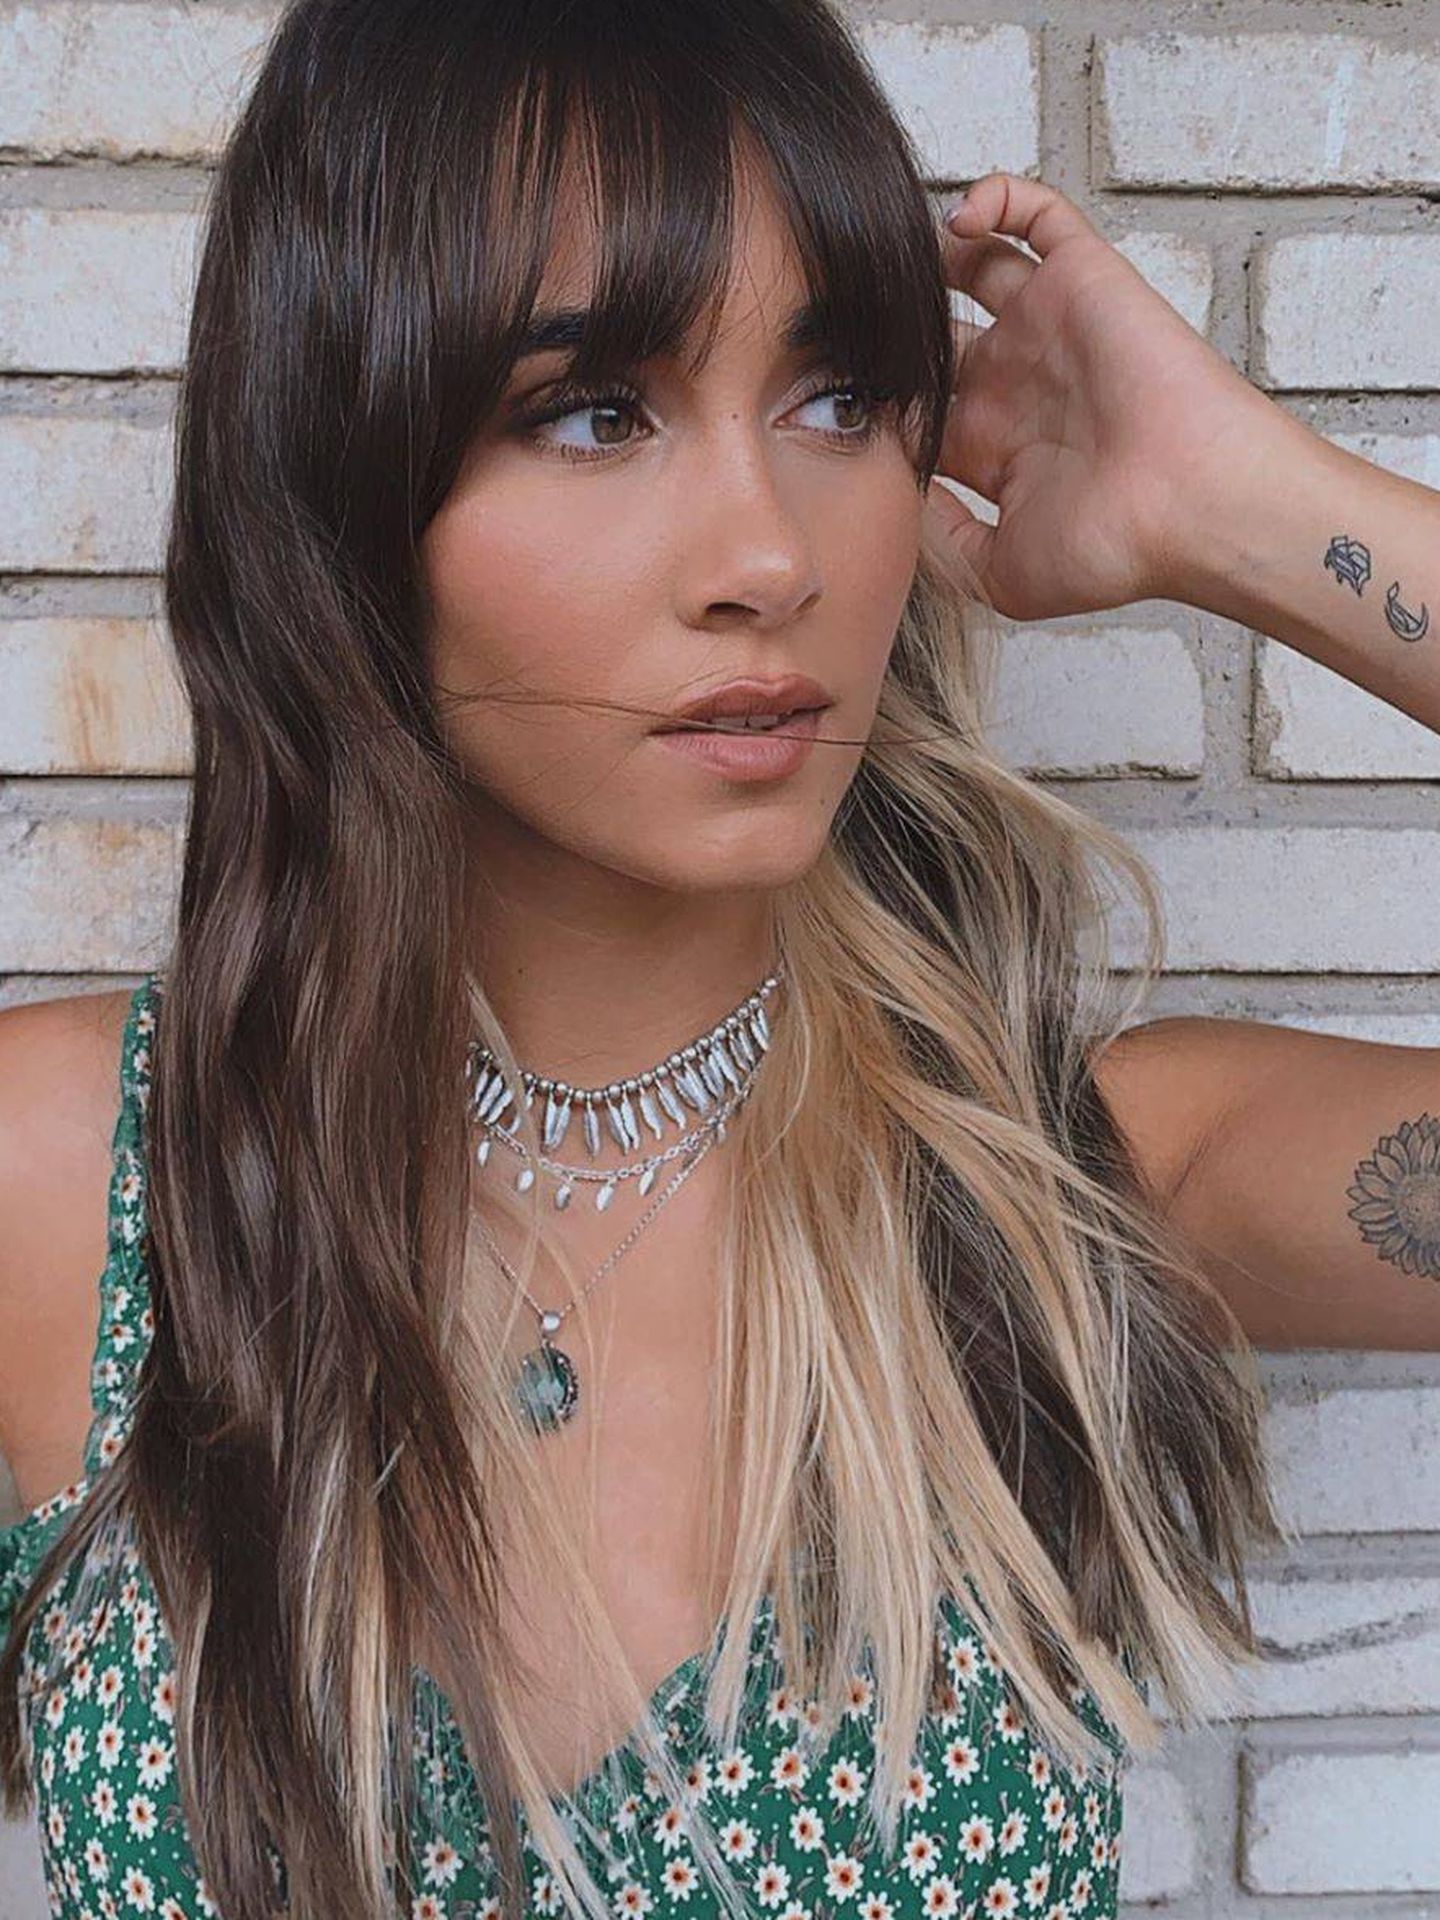 Aitana sorprende con un nuevo cambio de look, se pasa al rubio platino a medias. (Instagram, @aitanax)